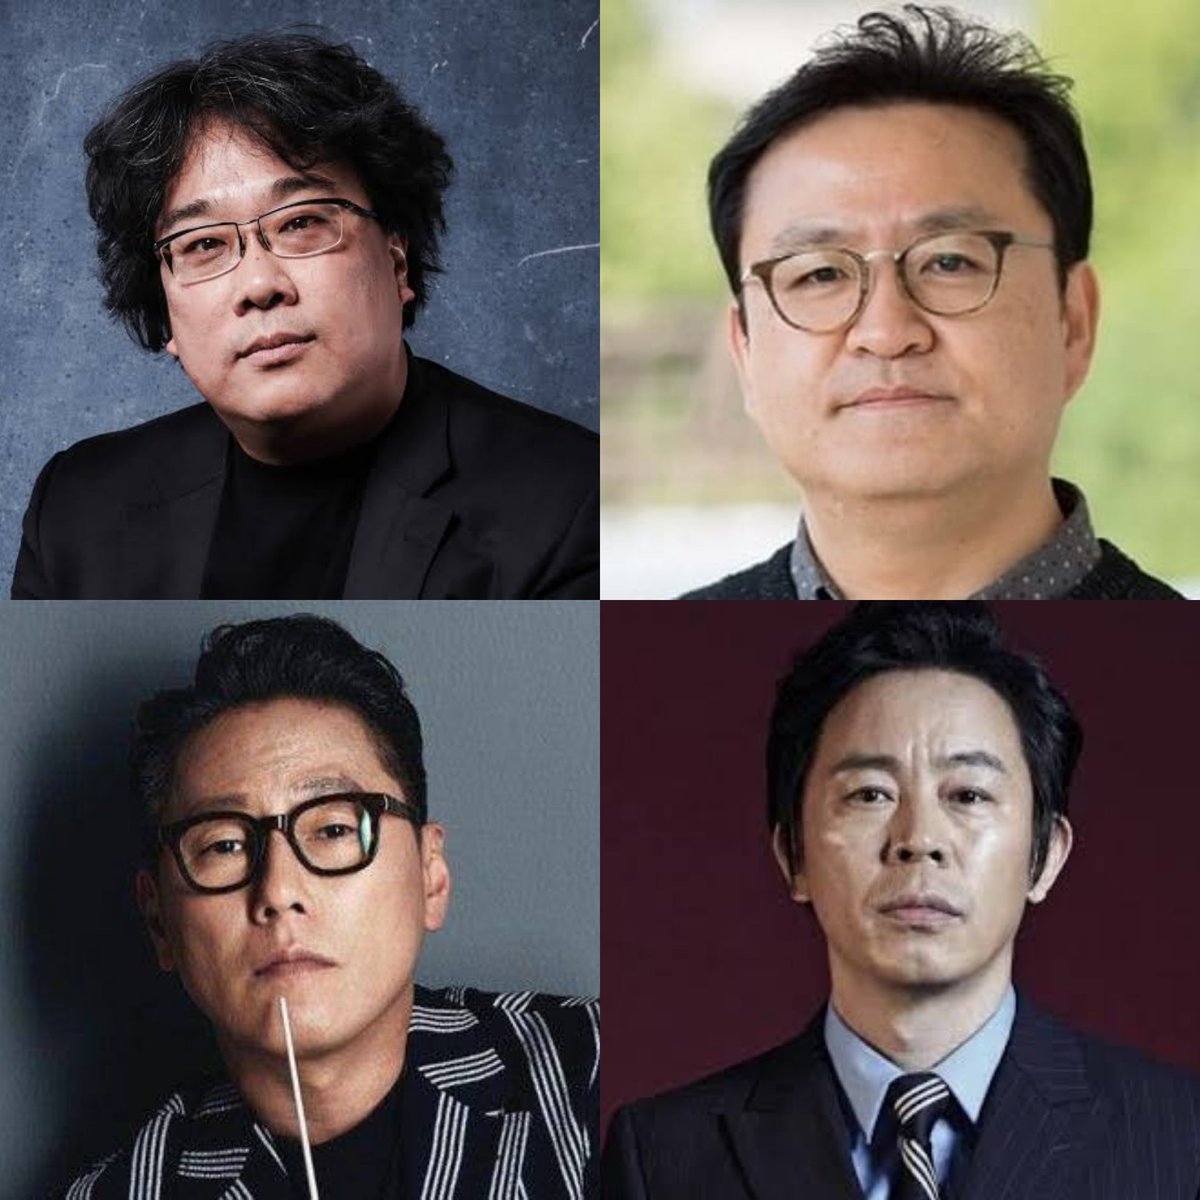 O diretor Bong Jong Ho, de #Parasite, o diretor Lee Won Tae, o cantor Yoon Jong Shin e o ator #ChoiDukMoon são alguns nomes que estarão presentes.

A comissão pretende pedir por uma investigação aprofundada as autoridades da verdade sobre o caso e pela memória do ator.